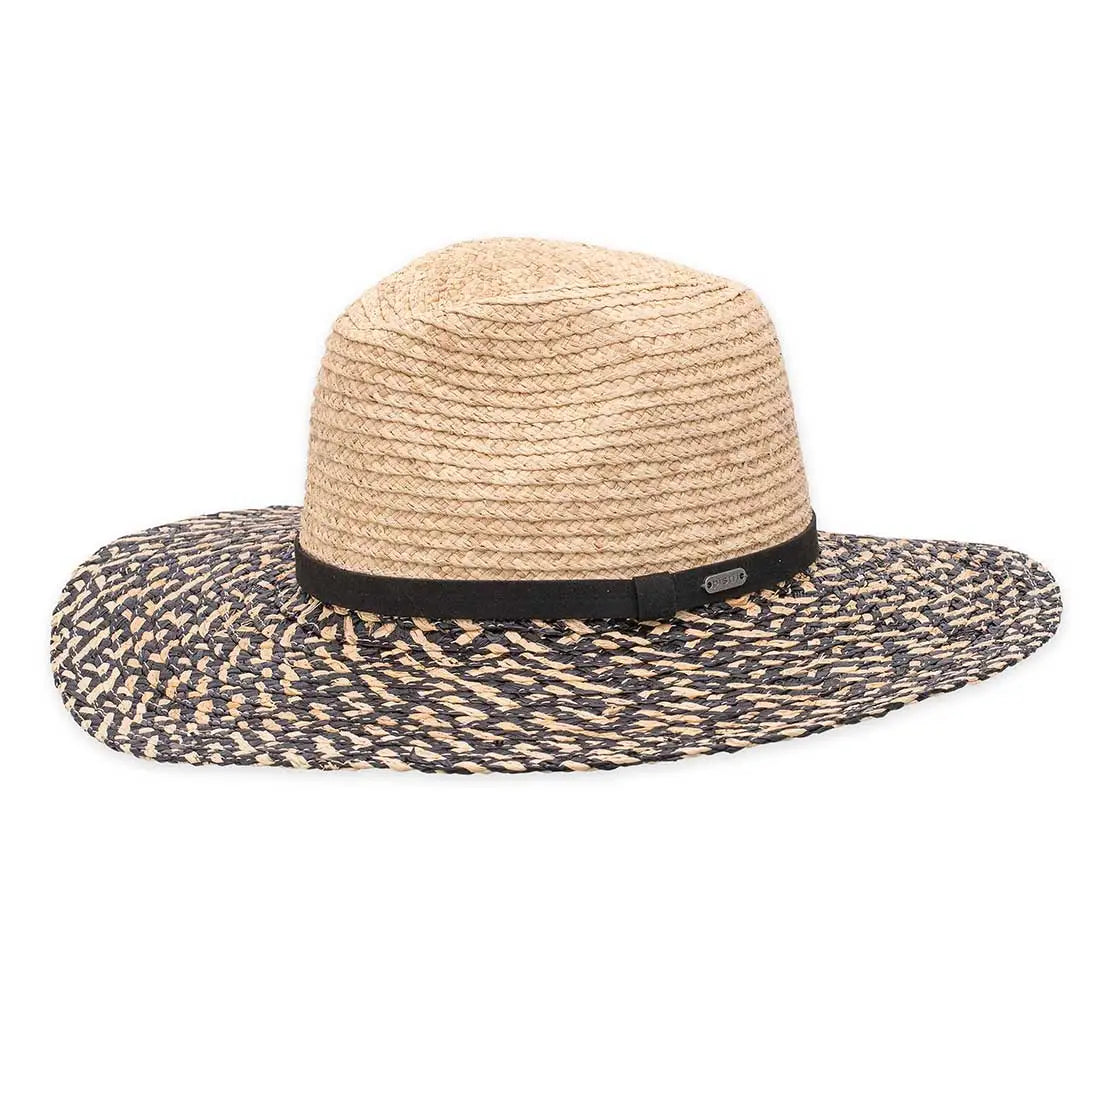 Wynette Sun Hat